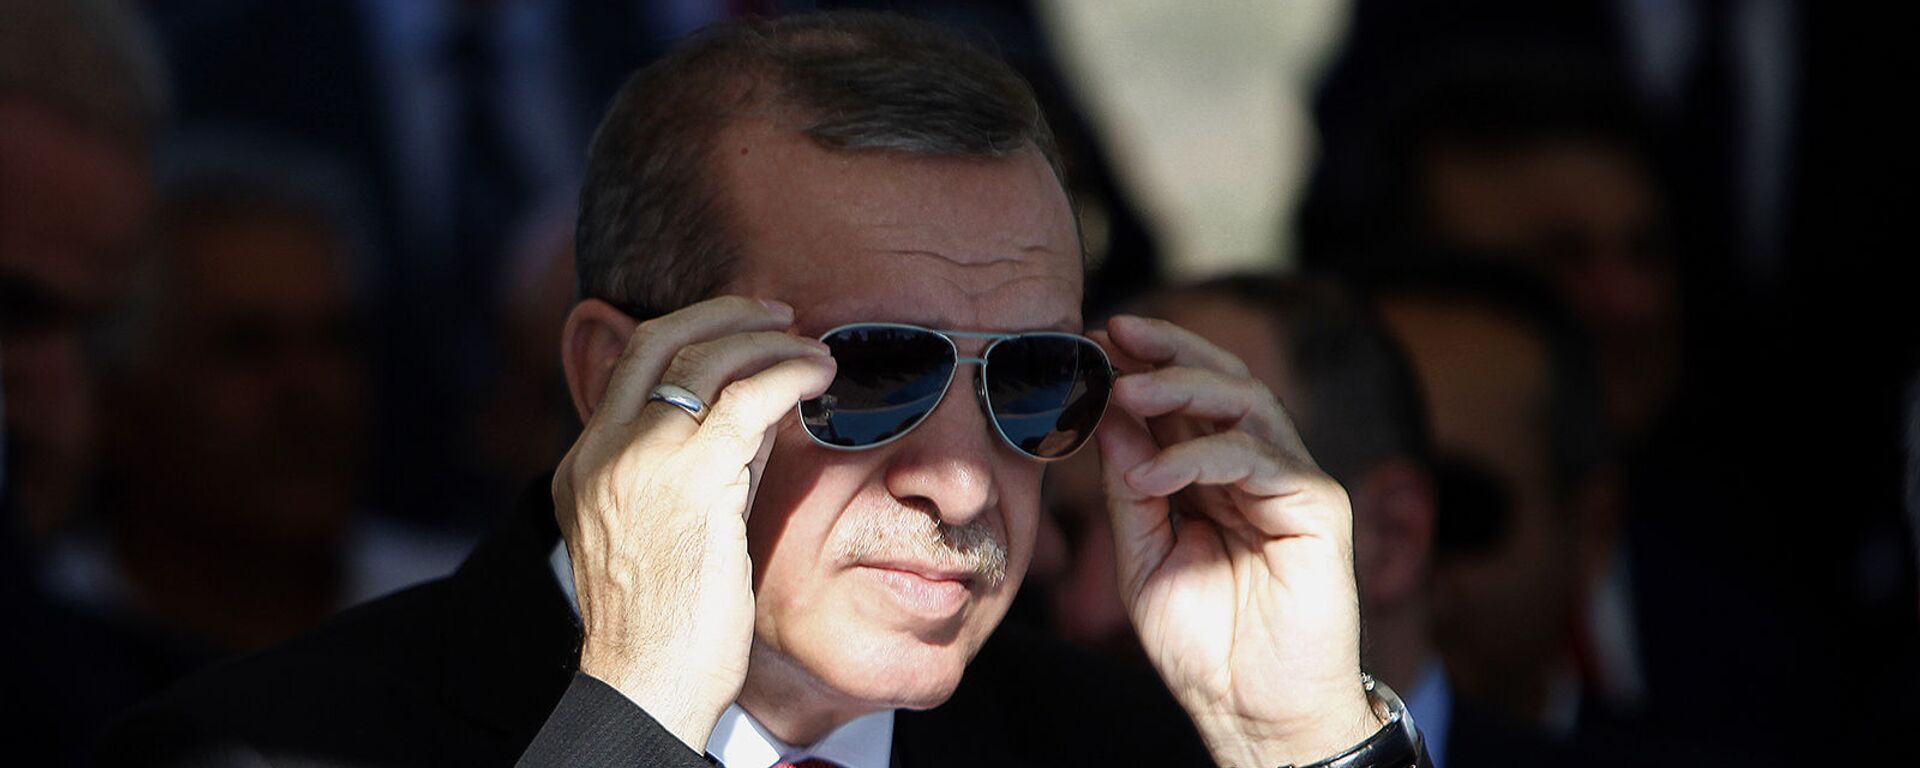 Президент Турции Реджеп Тайип Эрдоган поправляет солнцезащитные очки - Sputnik Армения, 1920, 30.09.2021